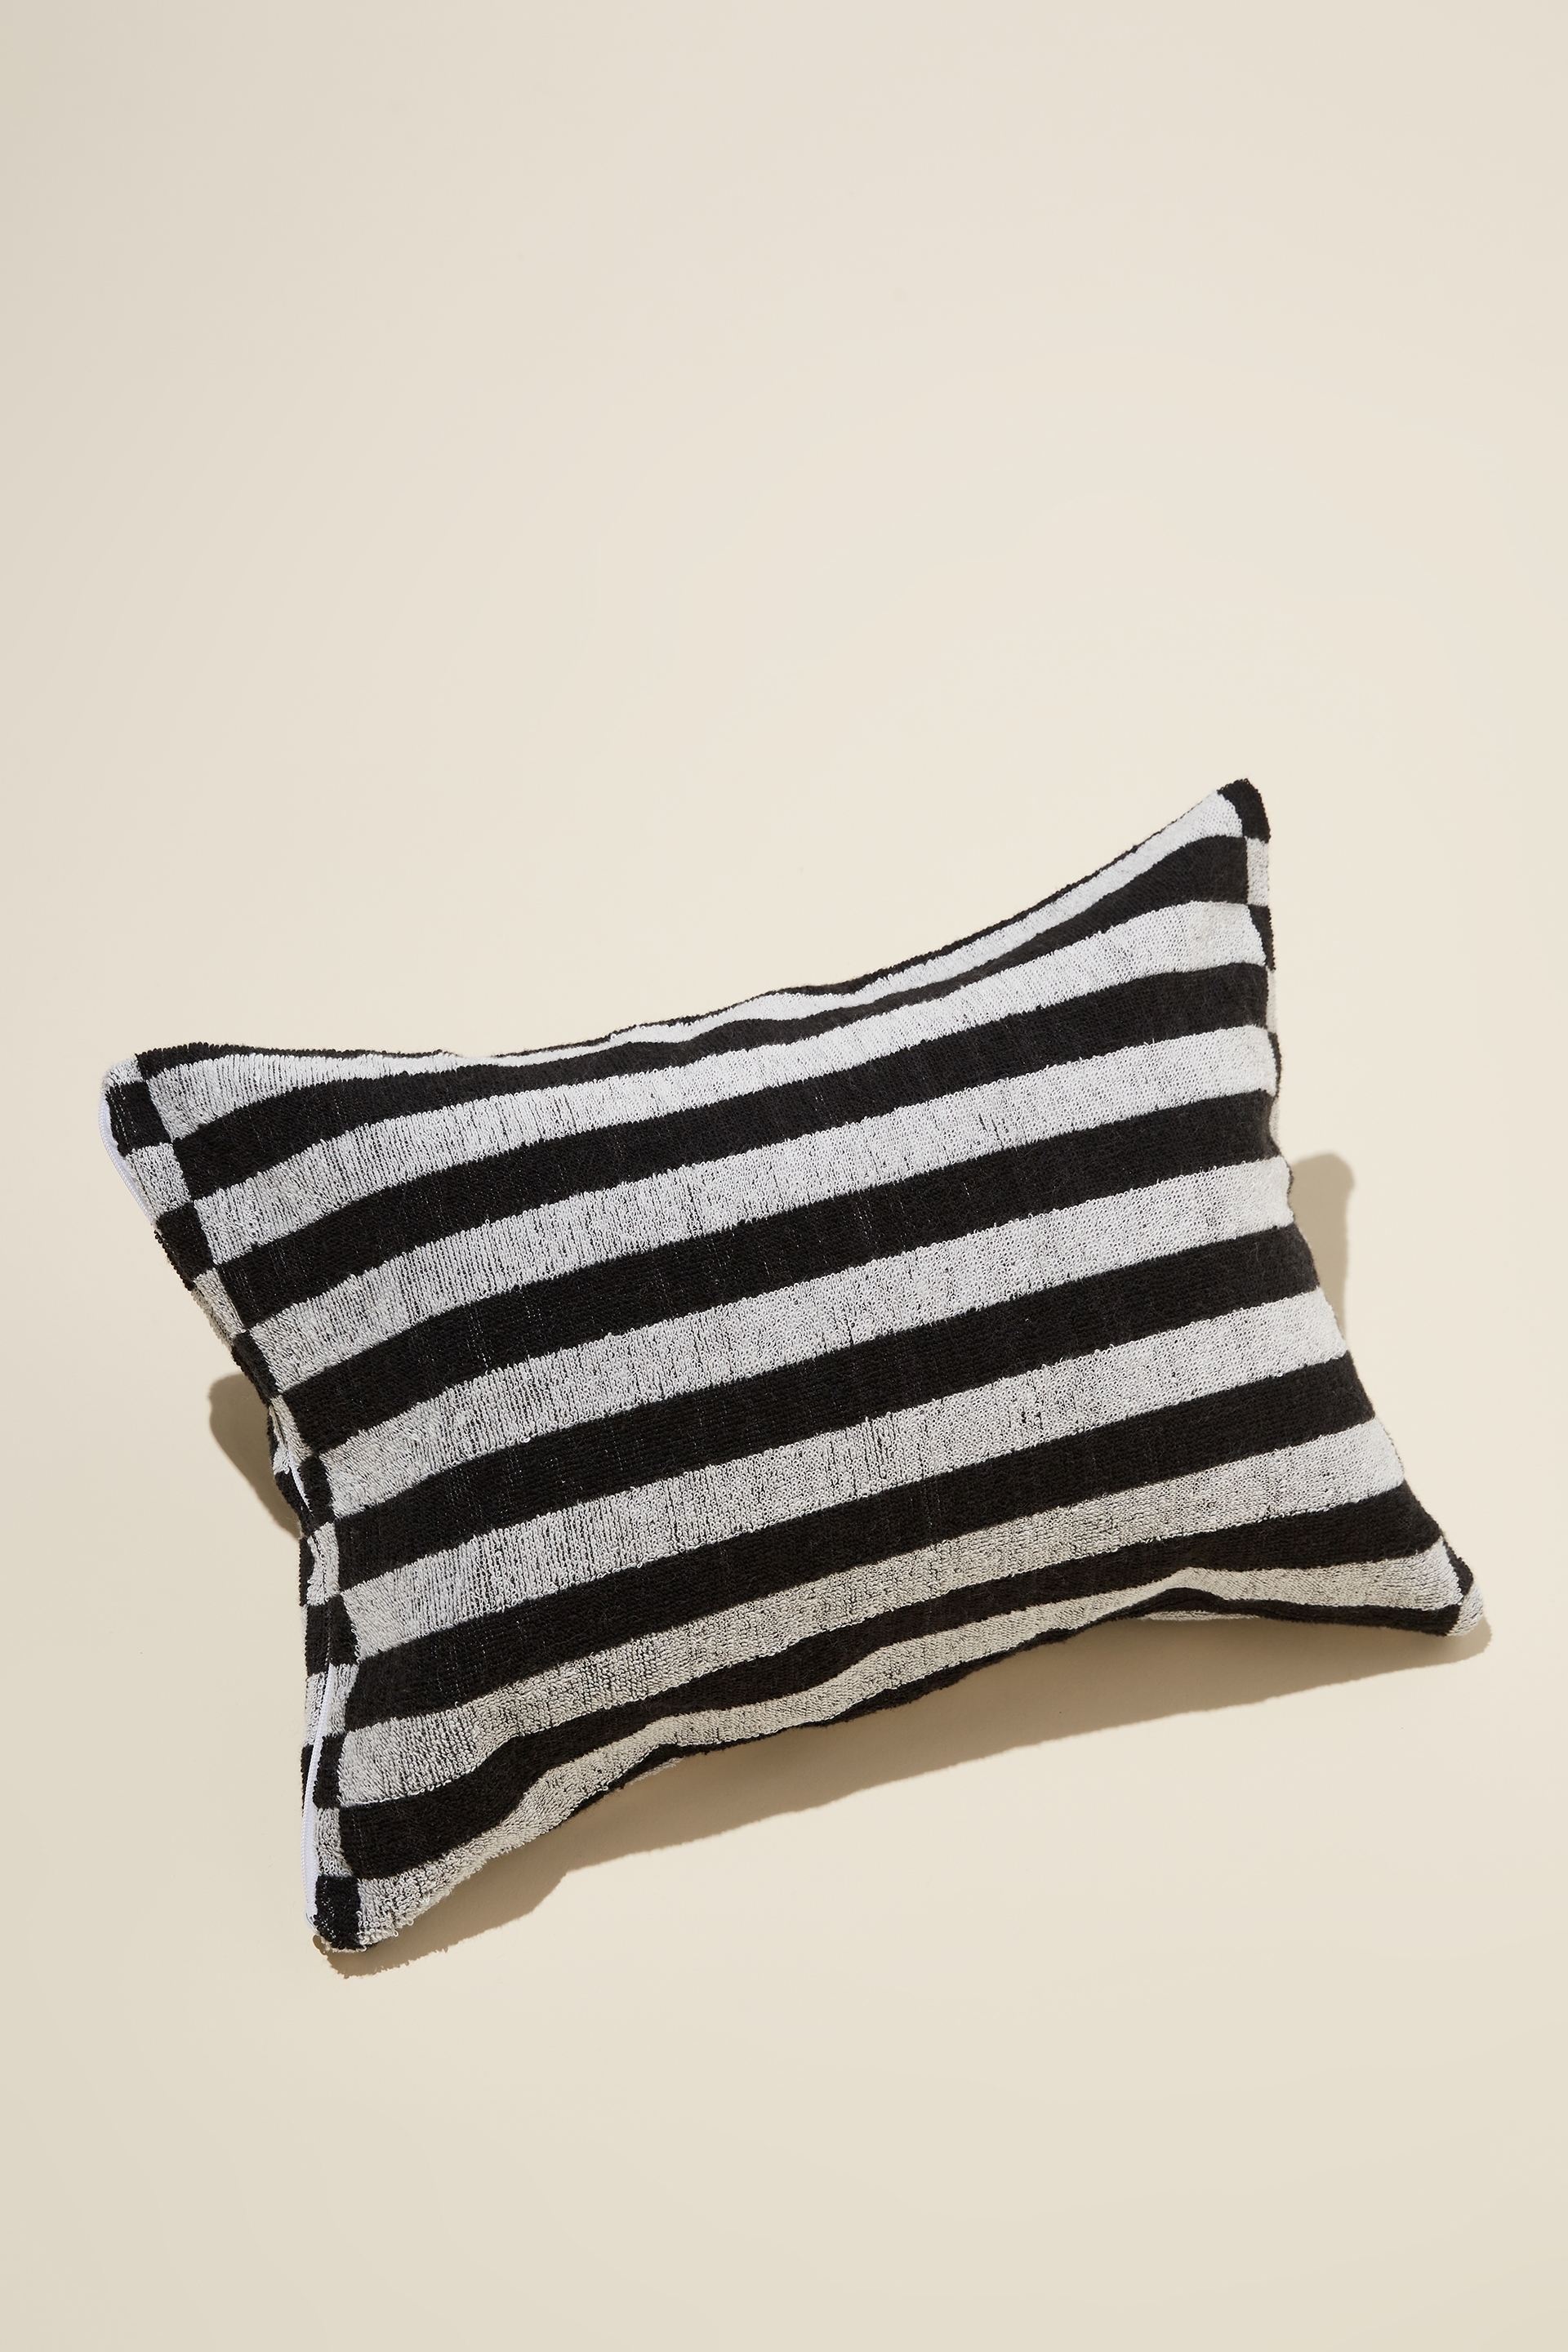 Rubi - Cotton Beach Pillow - Black white cut up stripe